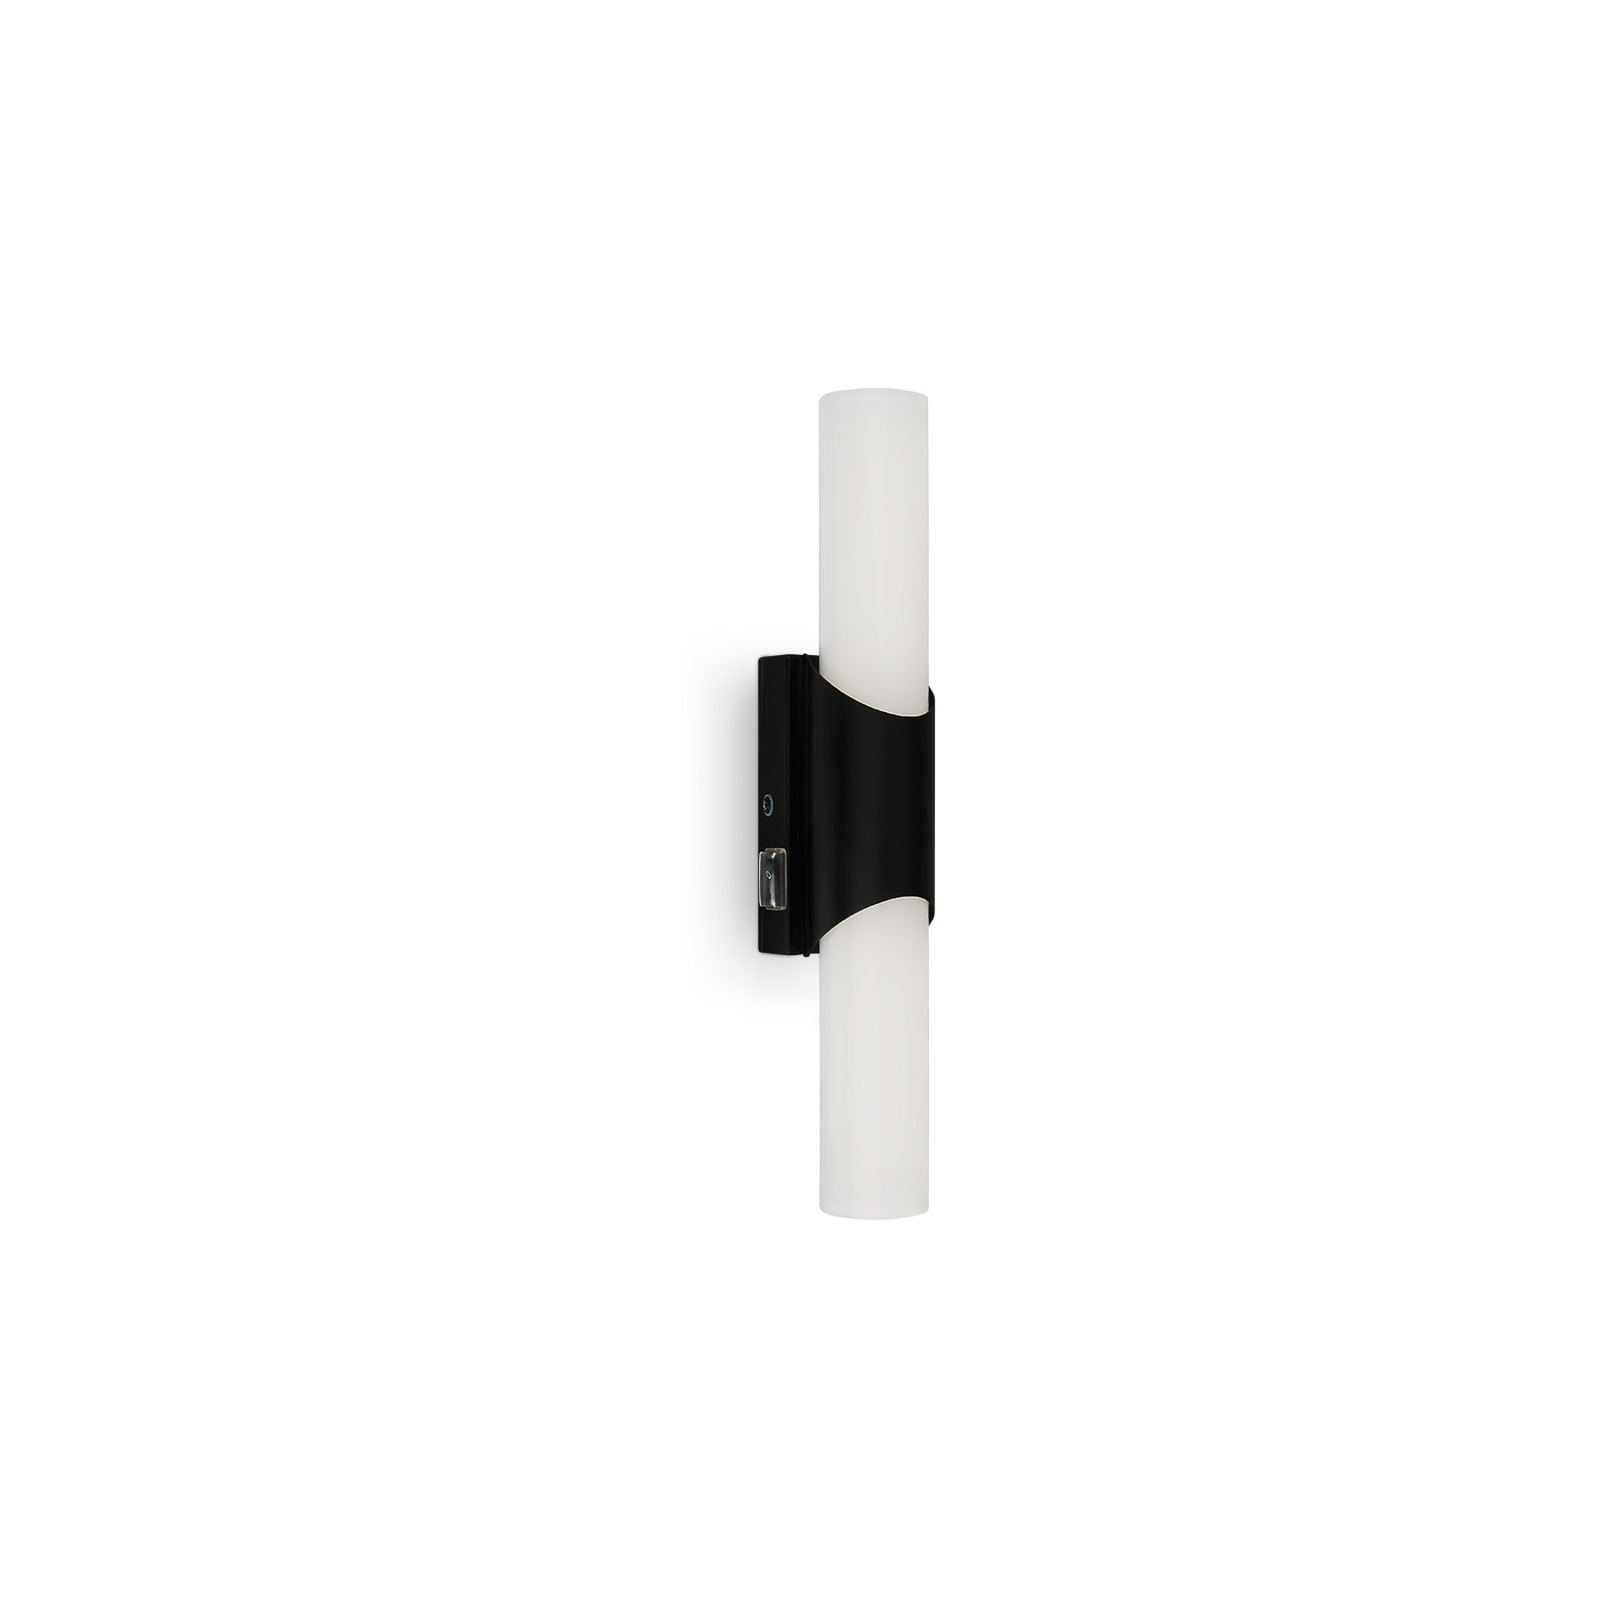 Koupelnové a zrcadlové světlo Klak Brilo, černé, 32 cm